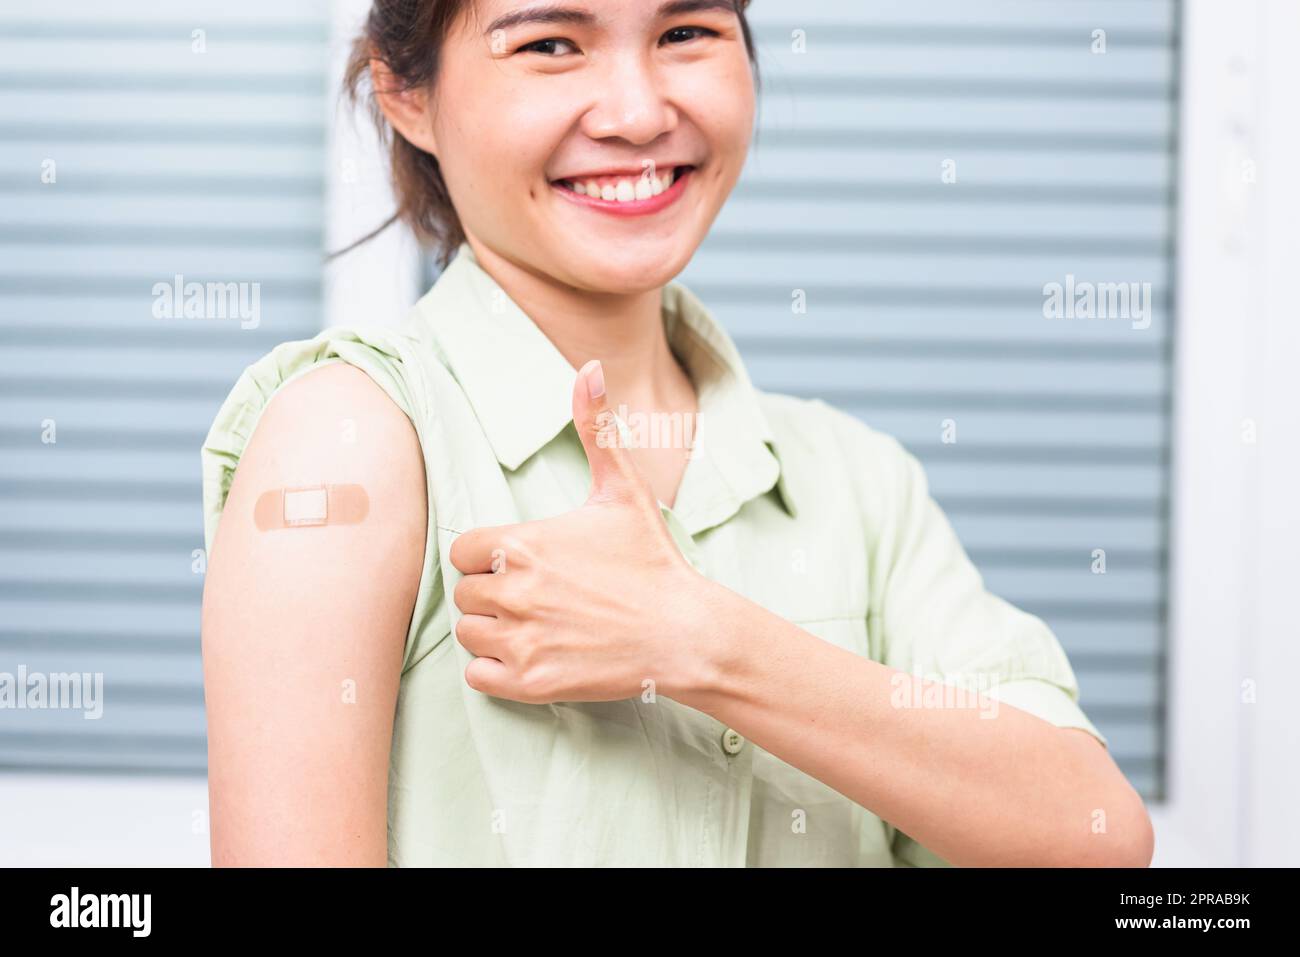 Asiatische junge Frau zeigt gestikulierenden Daumen nach oben oder wie und ihren Arm mit Gipsband Hilfe nach Coronavirus Covid-19 Impfstoffinjektion auf der Schulter, coron Stockfoto